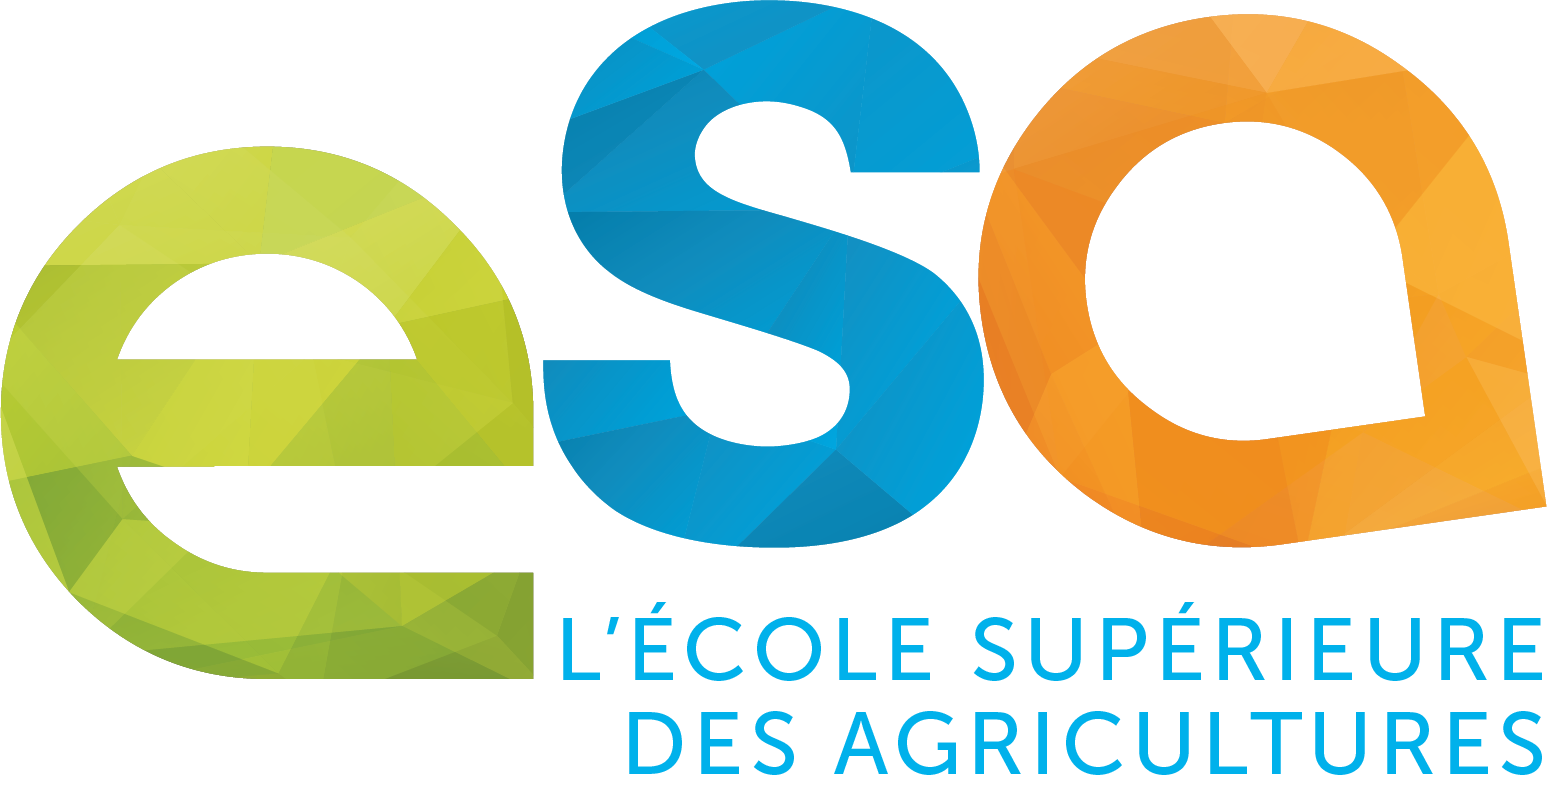 L'ESA, Ecole Supérieure des Agricultures